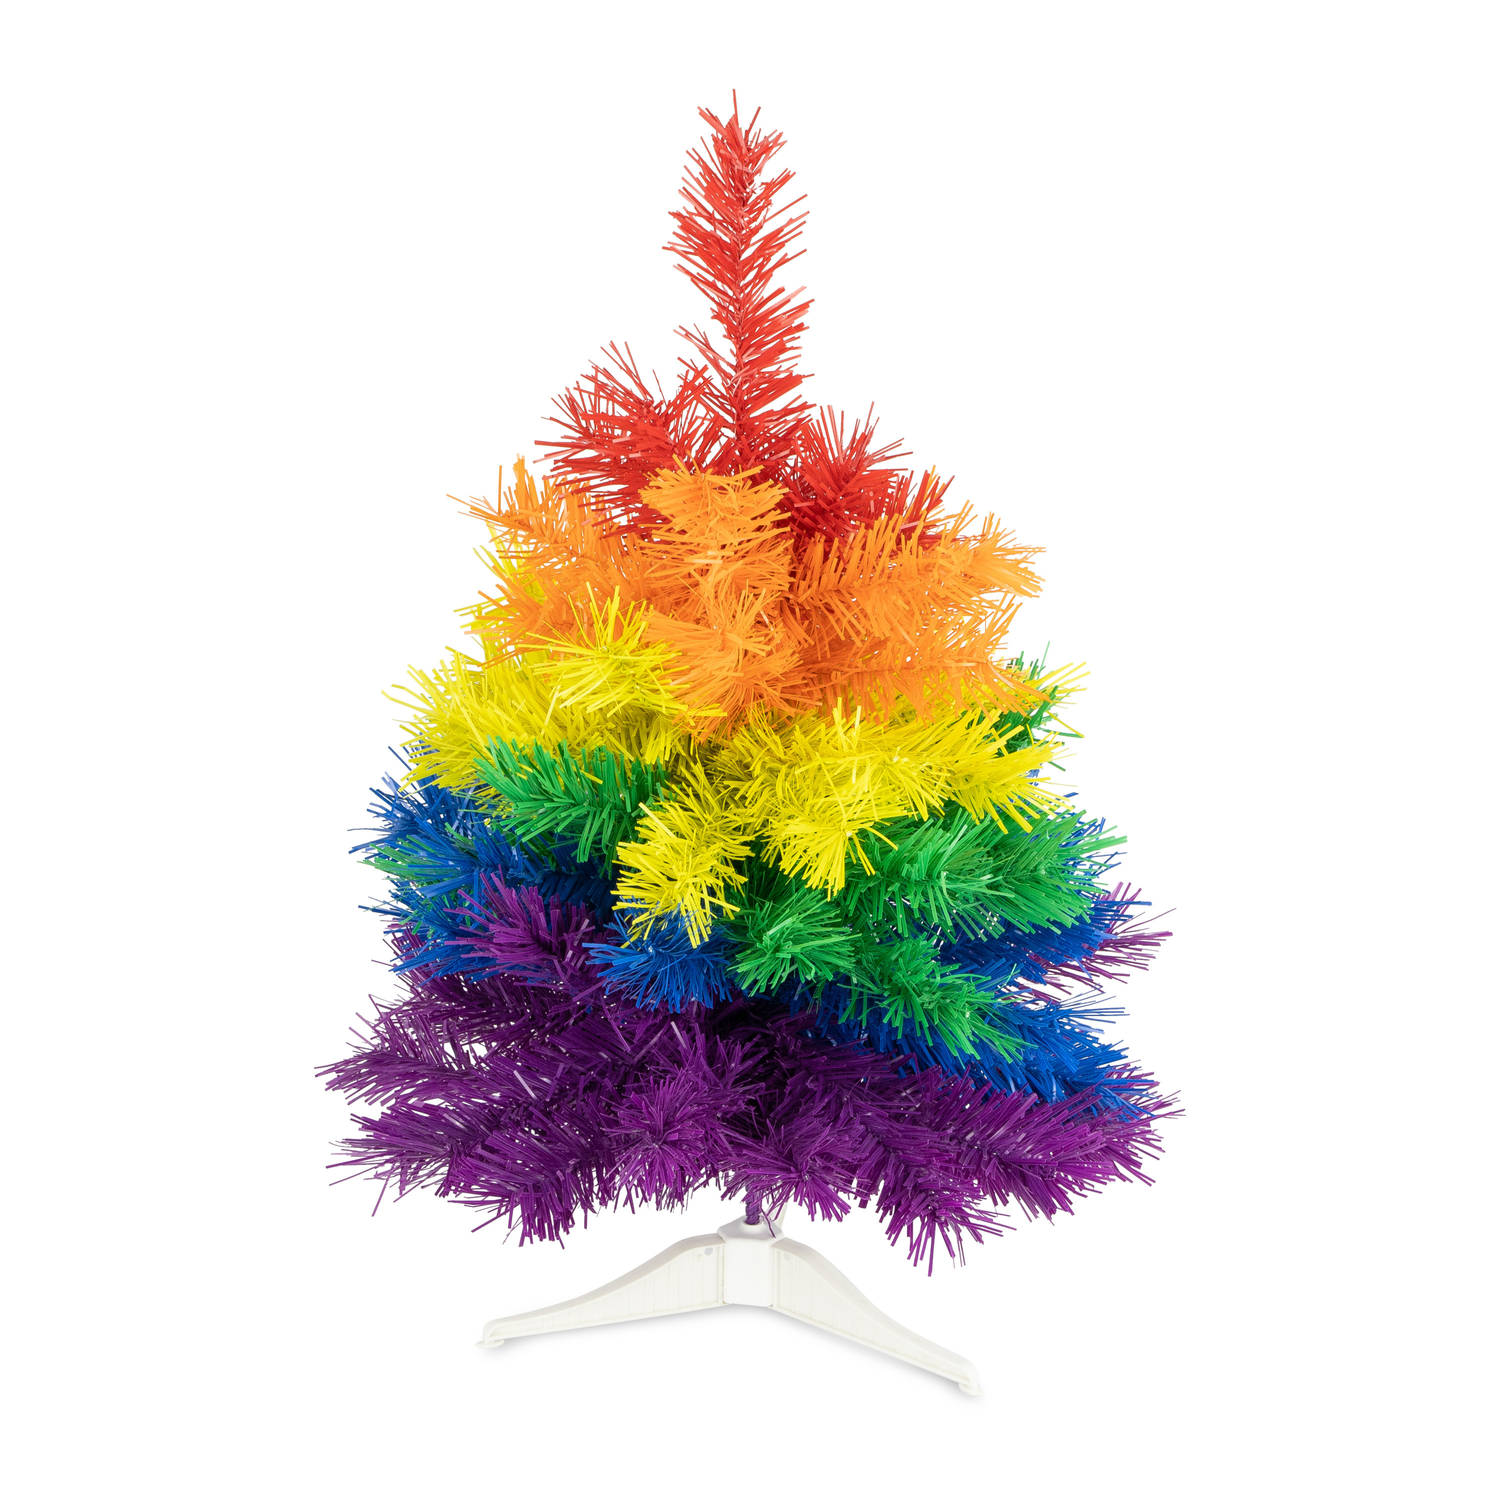 R en W kunst kerstboom klein - regenboog kleuren - H45 cmAƒÆ'A¢a‚¬A¡AƒaEsA‚A - kunststof - Kunstkerstboom